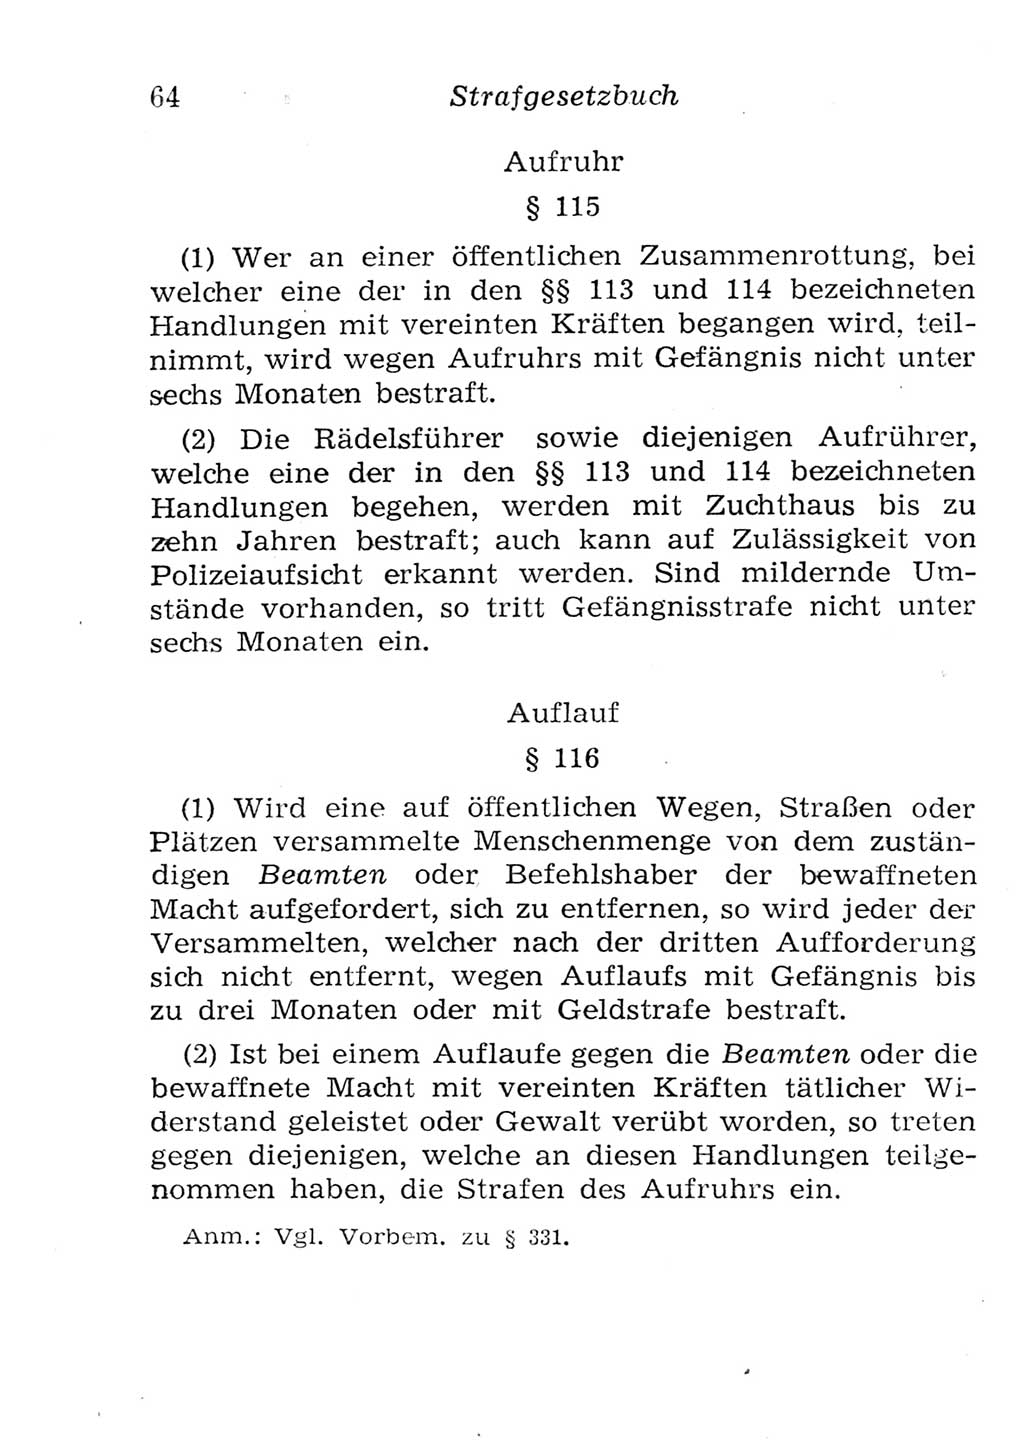 Strafgesetzbuch (StGB) und andere Strafgesetze [Deutsche Demokratische Republik (DDR)] 1957, Seite 64 (StGB Strafges. DDR 1957, S. 64)